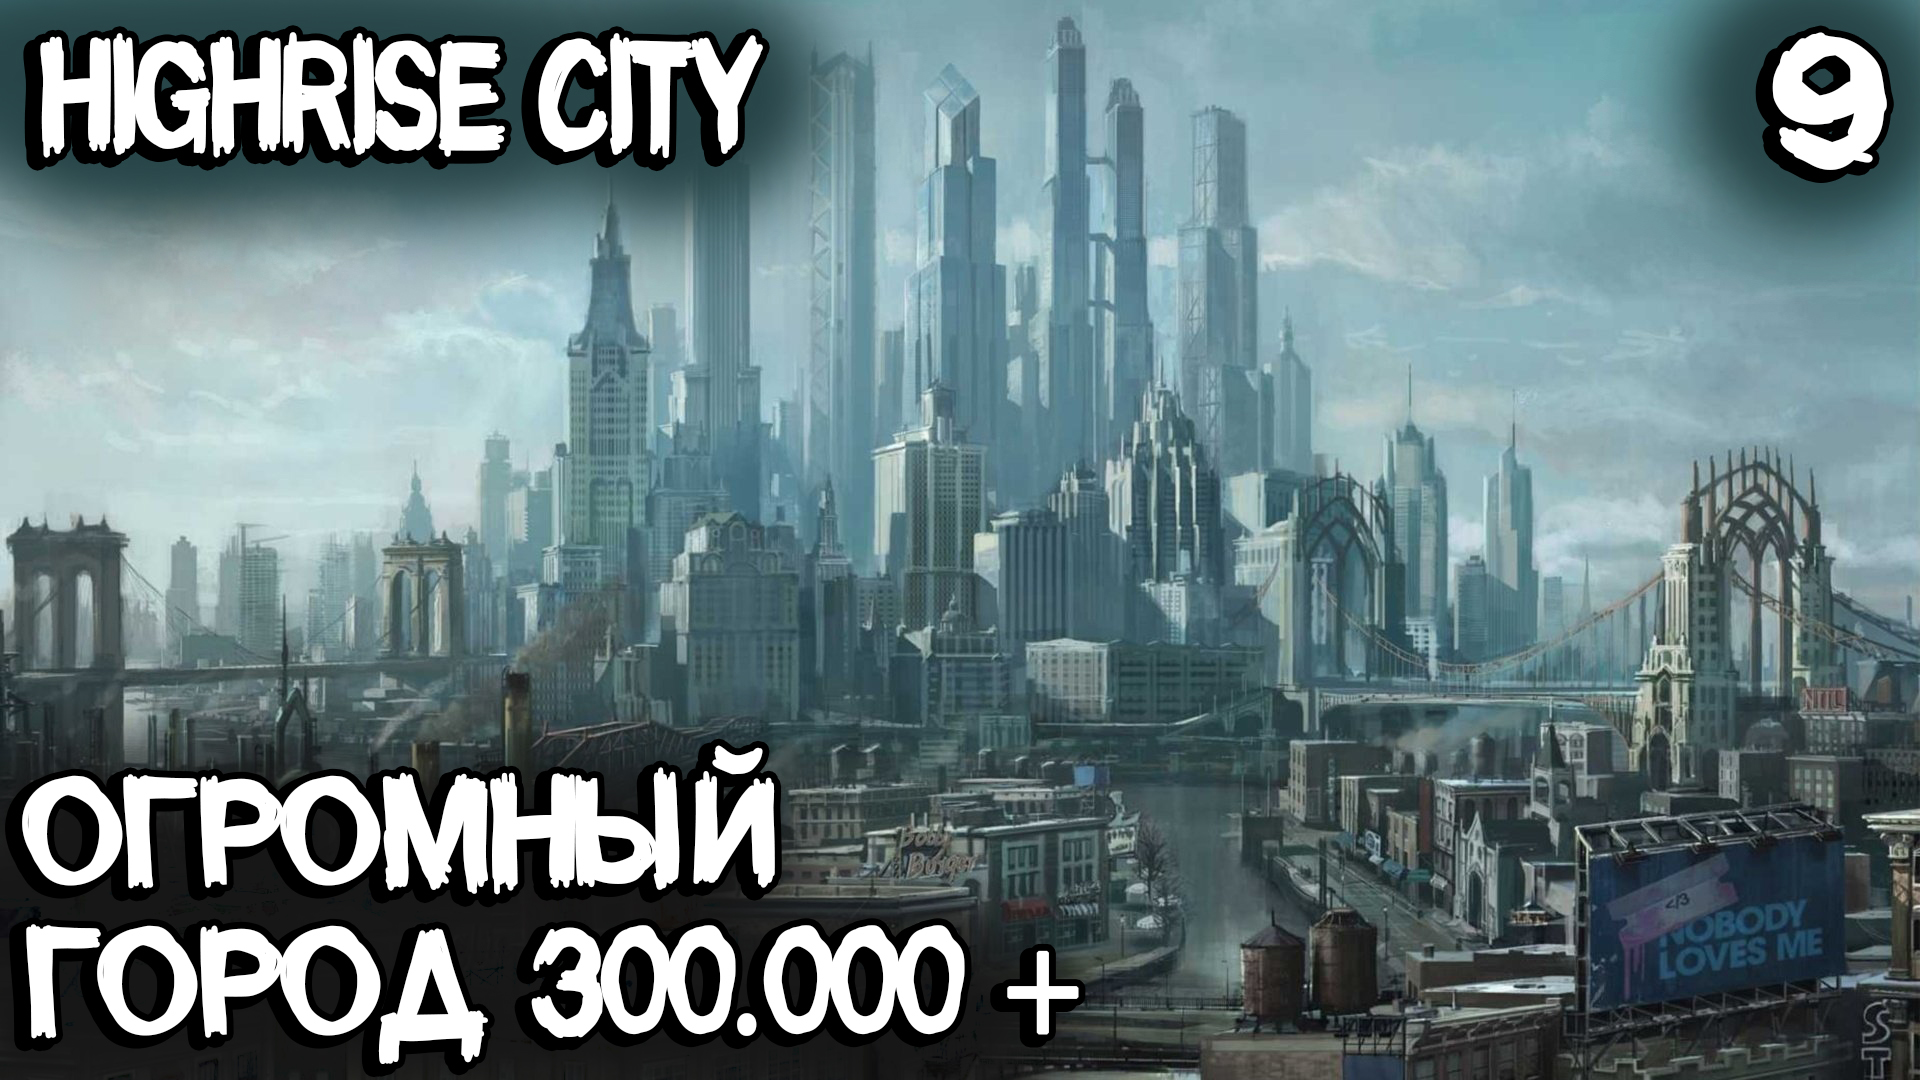 Highrise City – финал сезона! Огромный город с населением 300.000 человек и полной застройкой карты